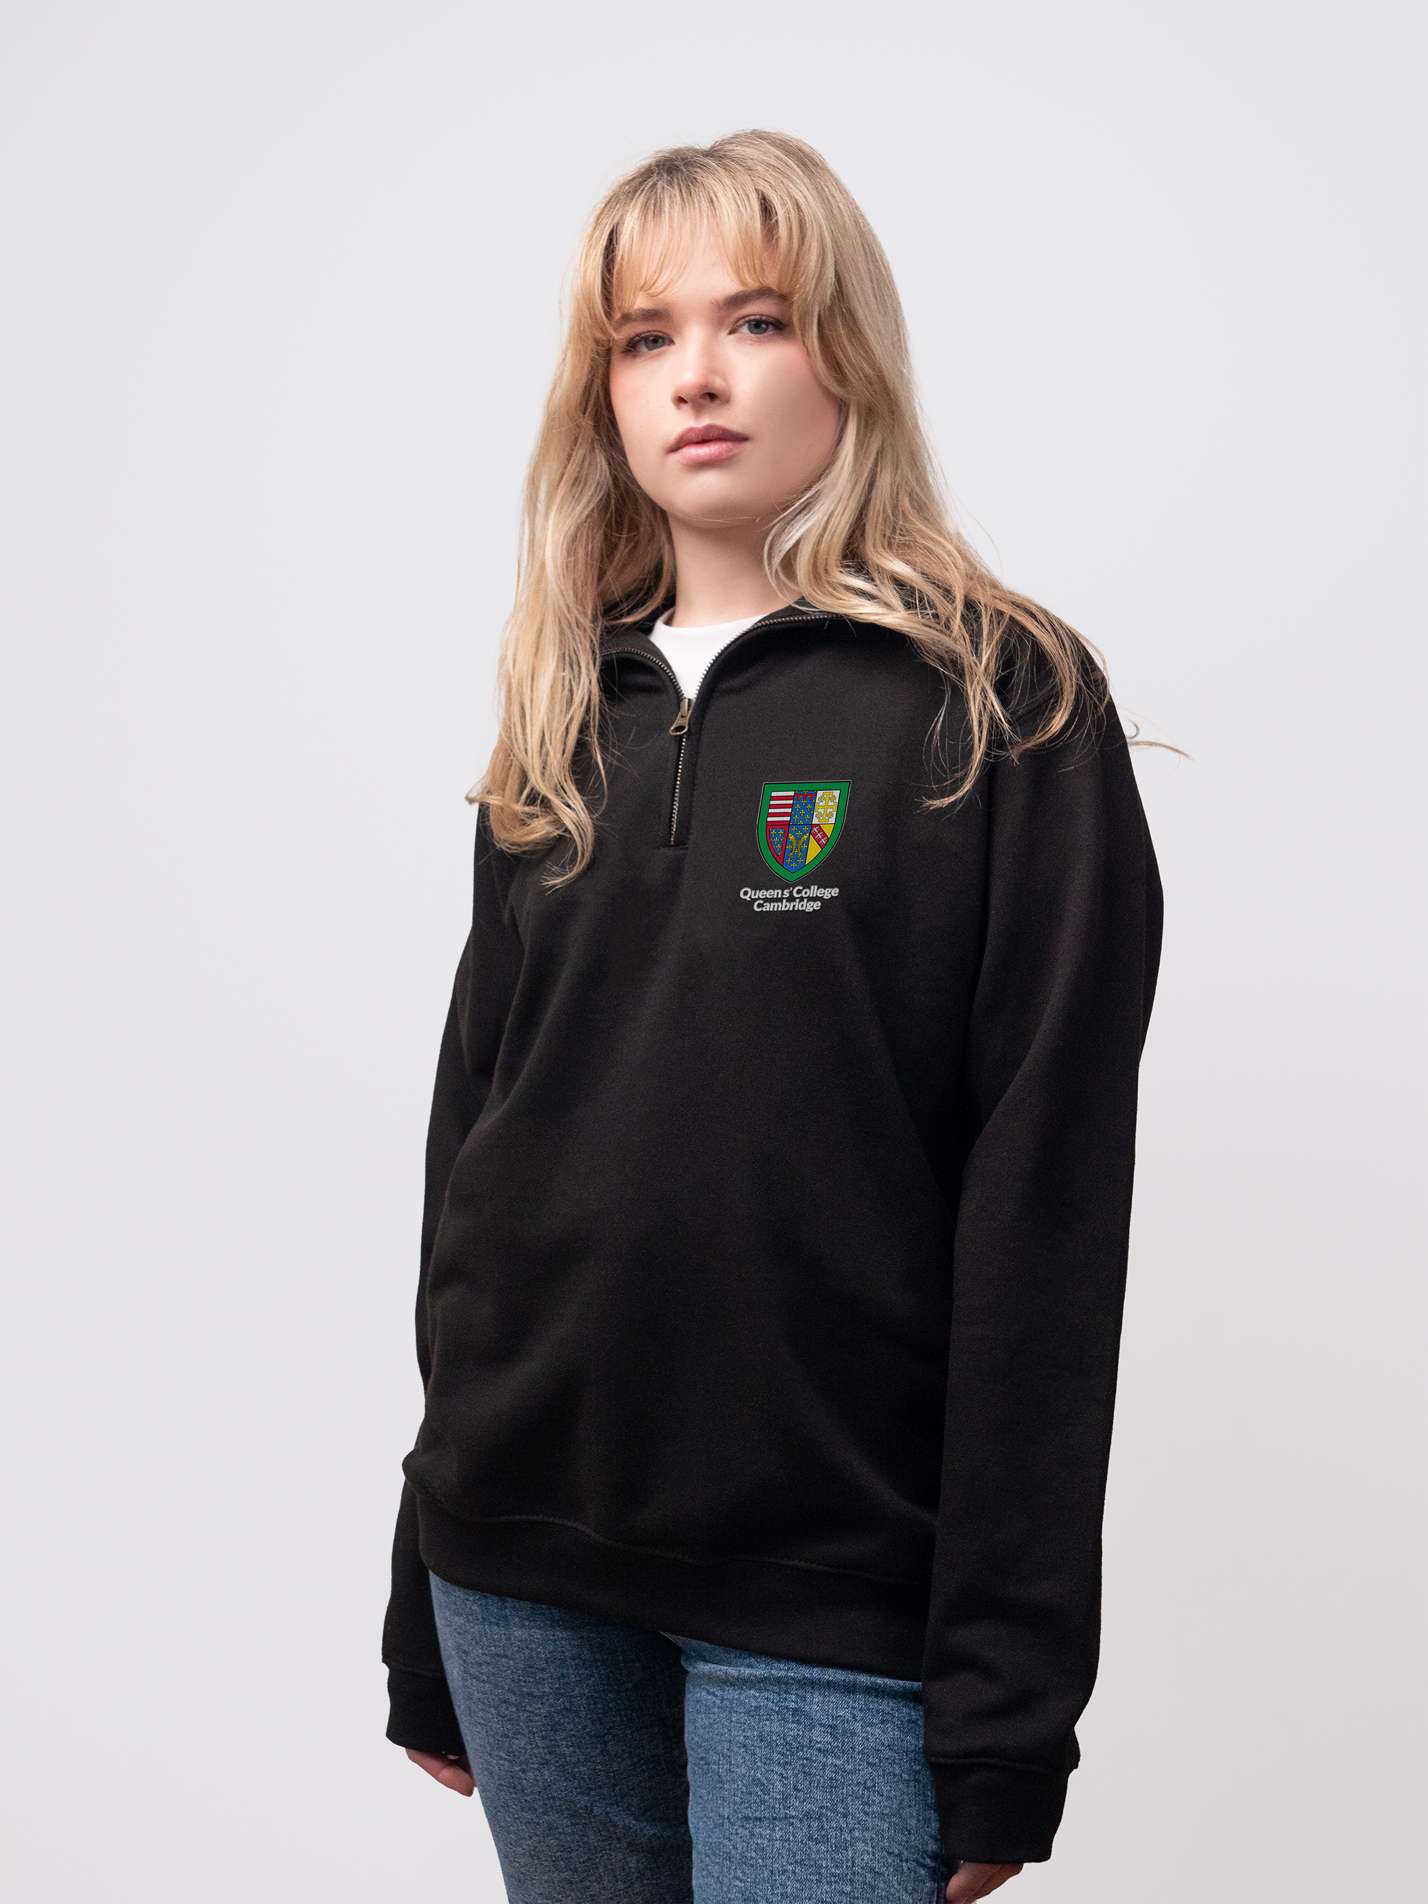 Queens' student wearing a black 1/4 zip sweatshirt 